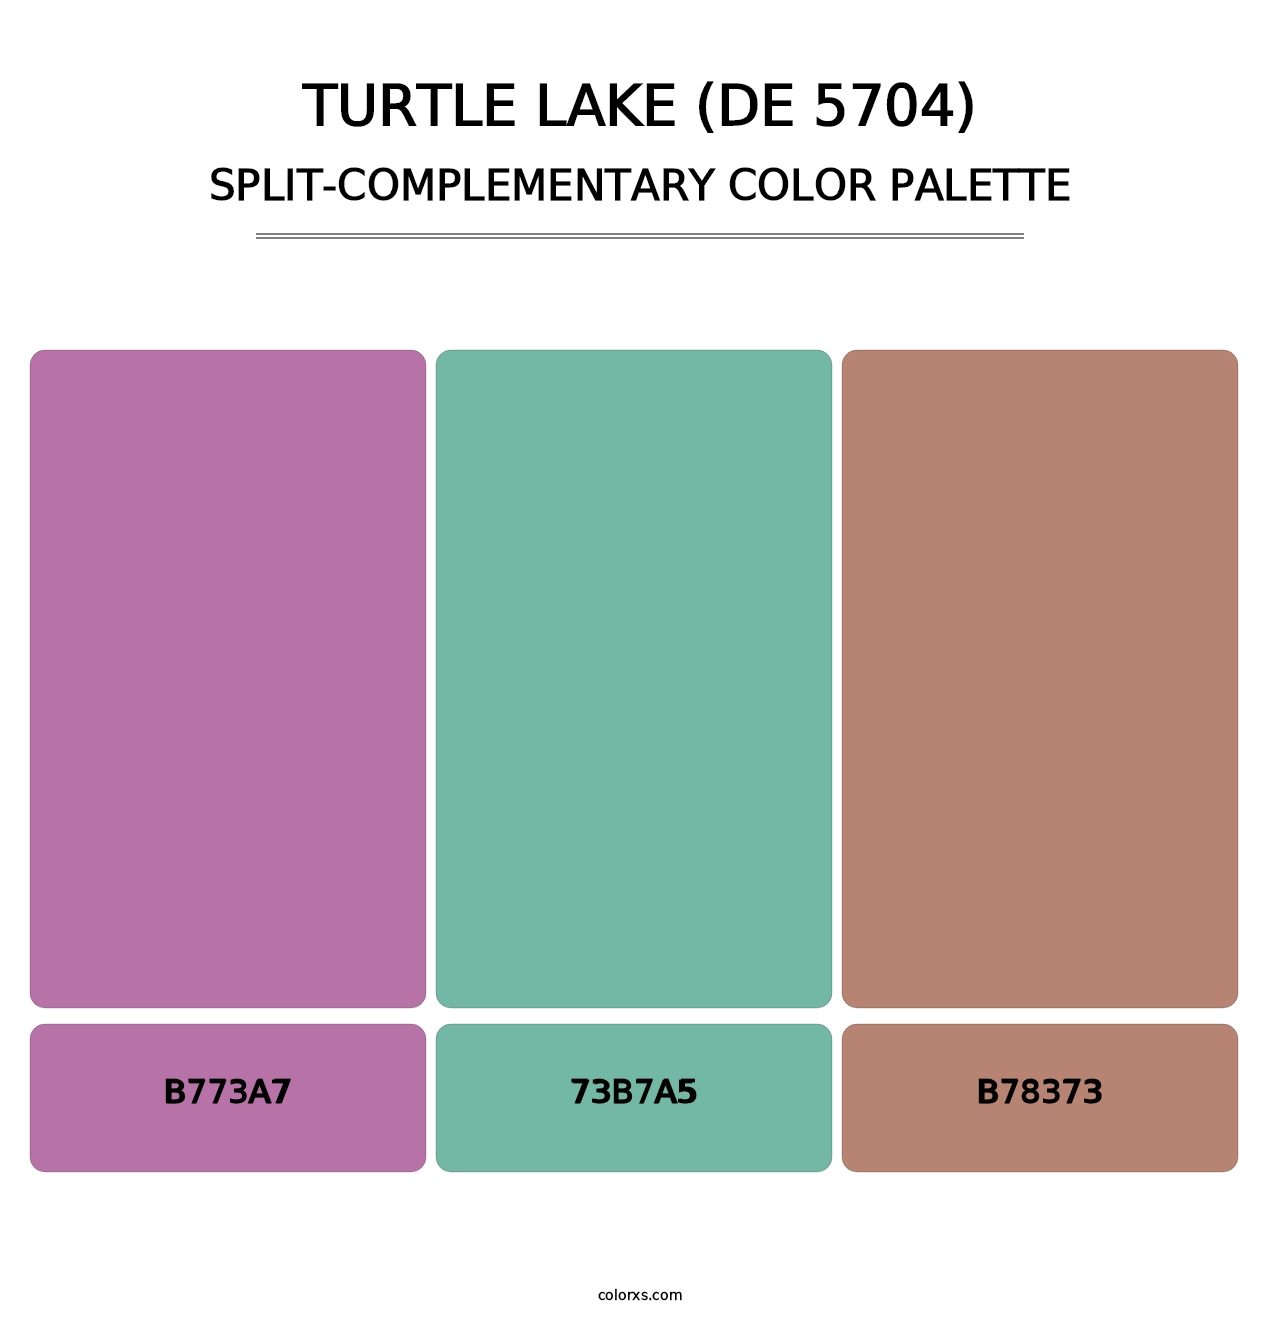 Turtle Lake (DE 5704) - Split-Complementary Color Palette